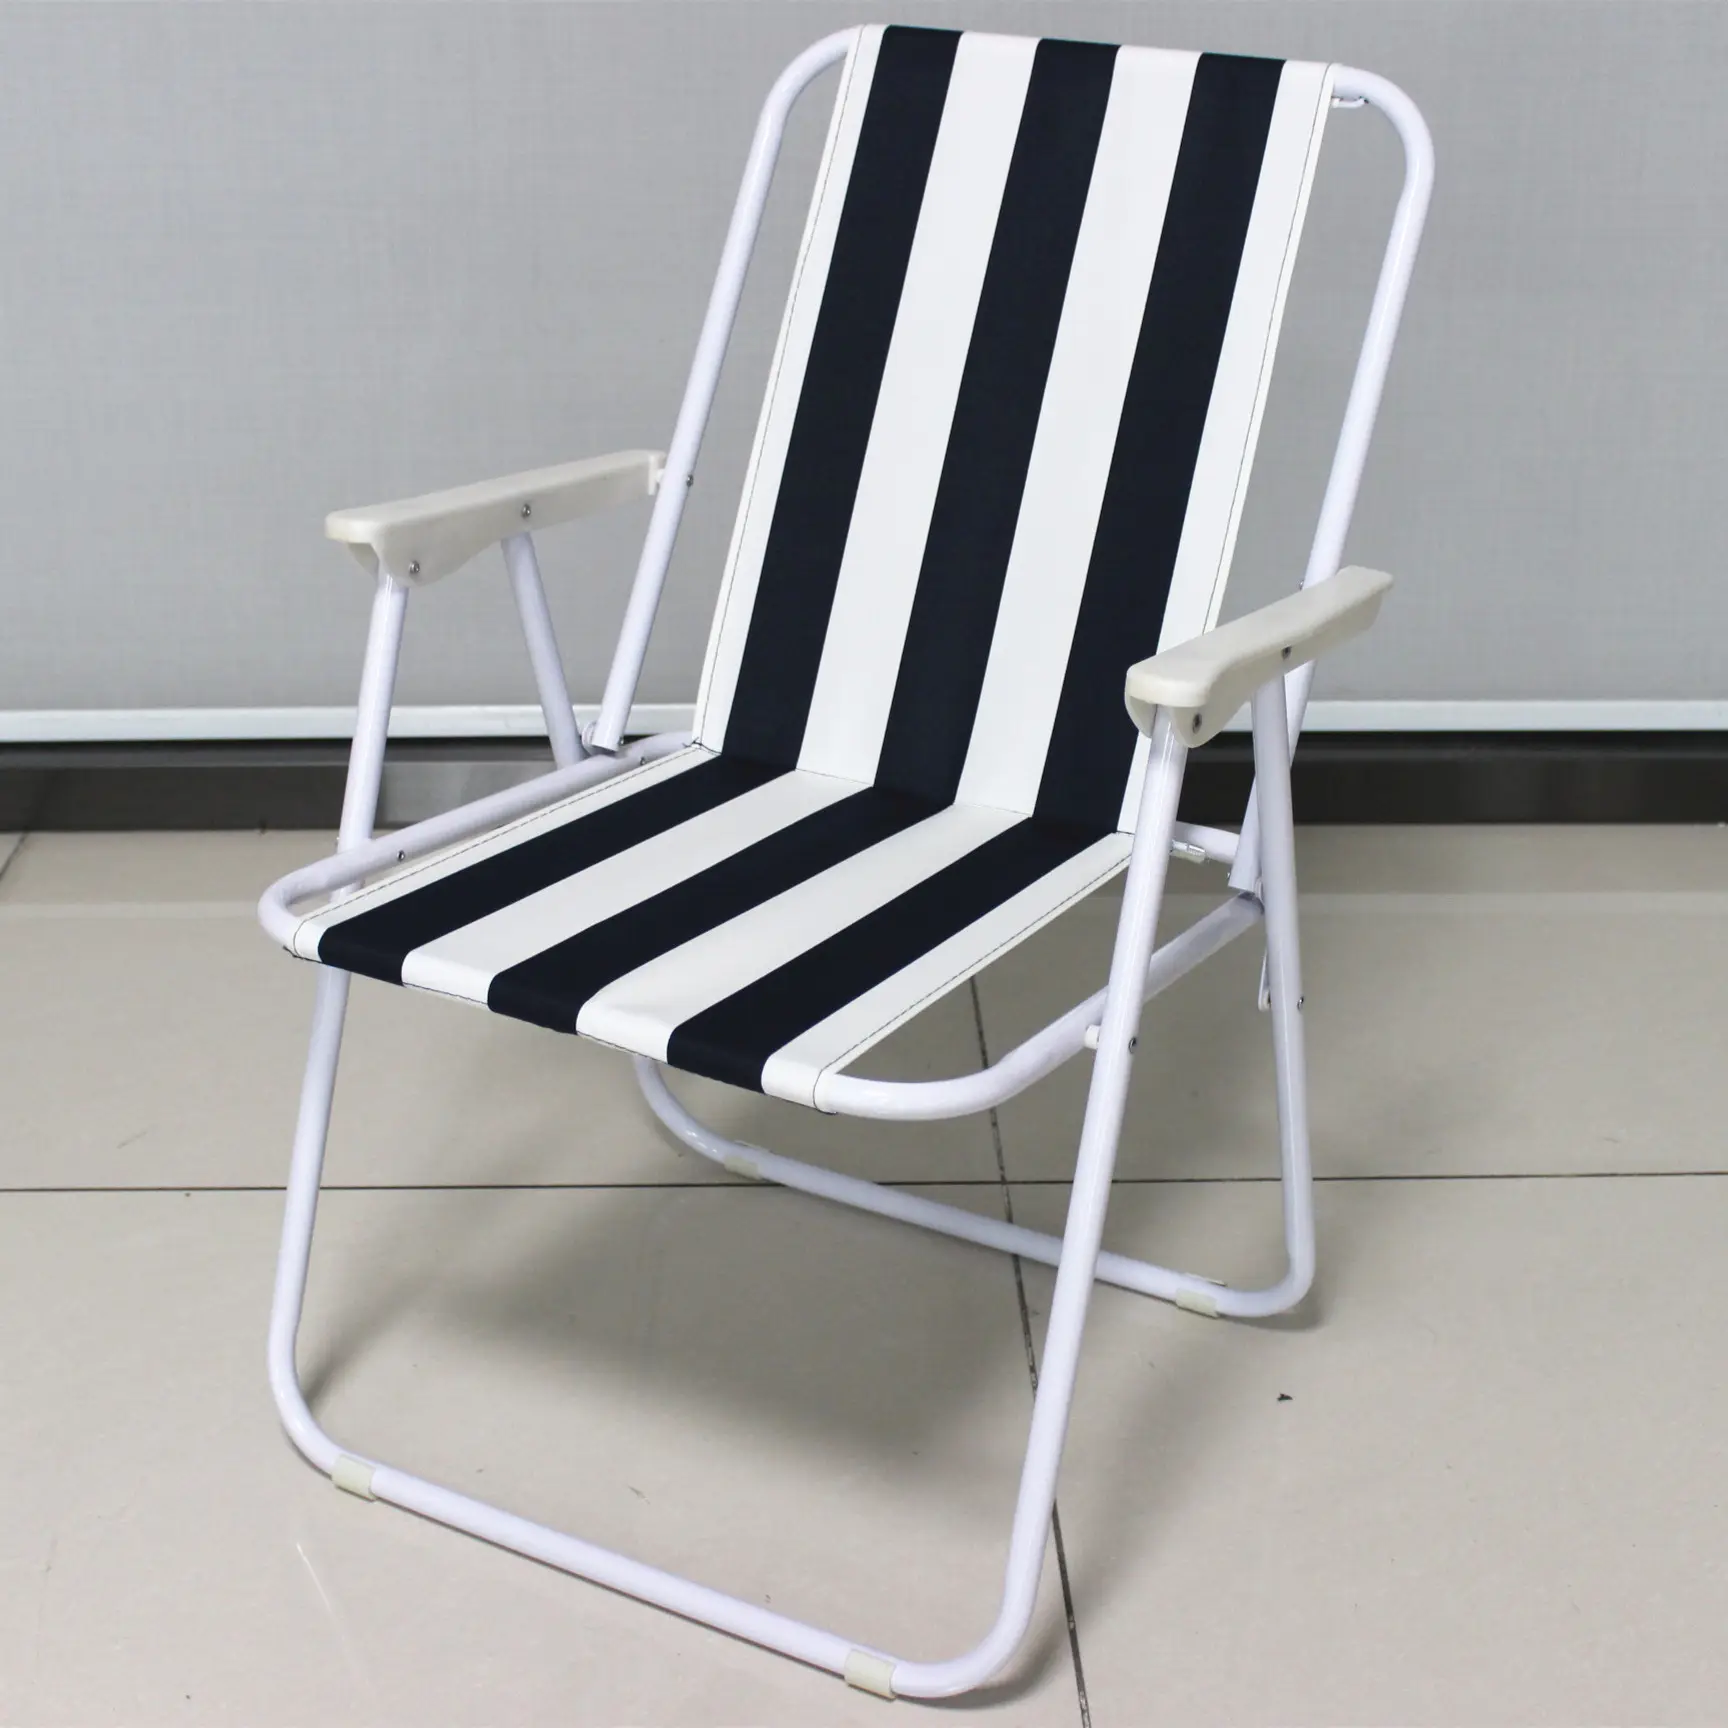 고품질 낮은 뒤 봄 바닷가 의자 개인화된 표적 높은 좌석 접히는 야영 바닷가 의자